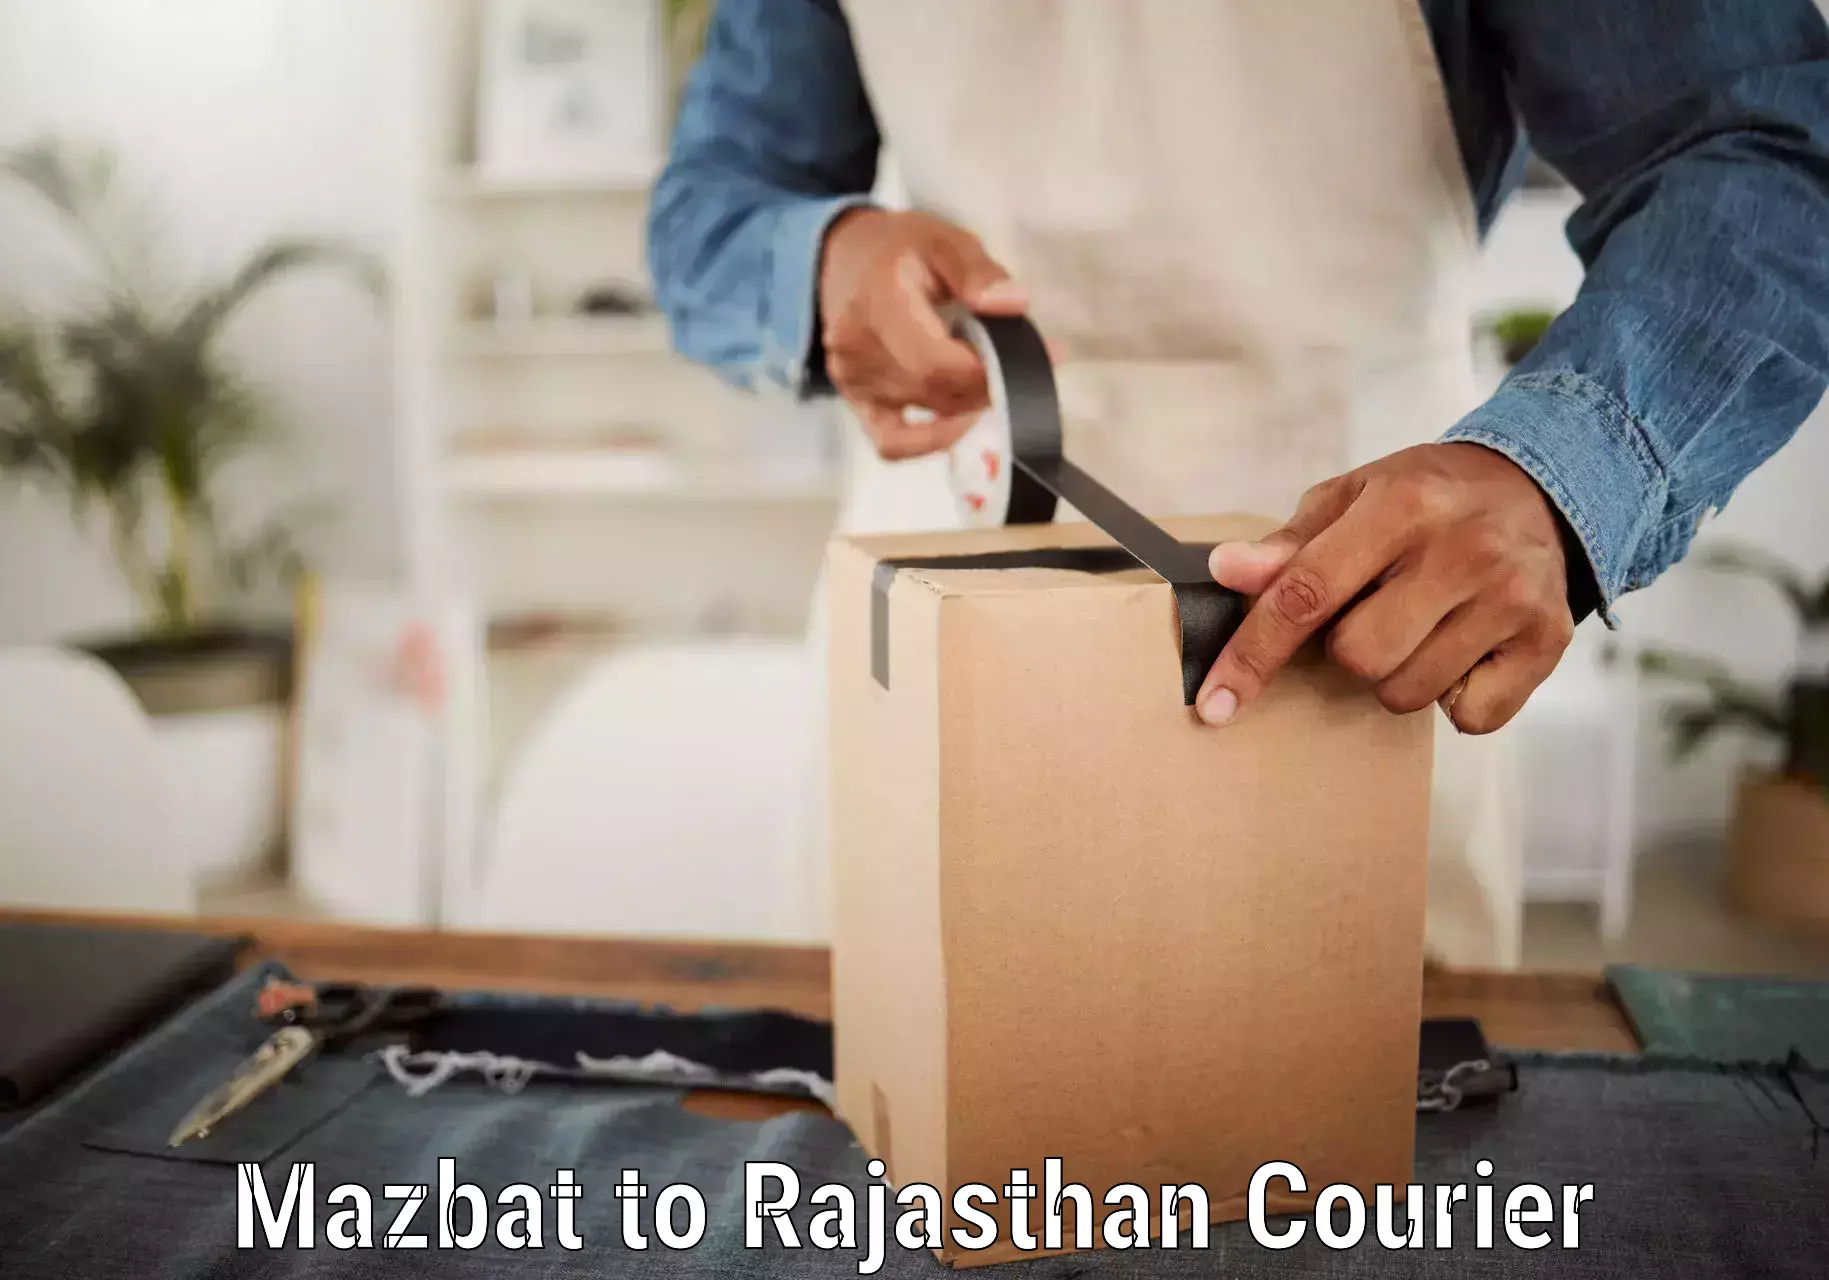 Courier service innovation Mazbat to Pokhran